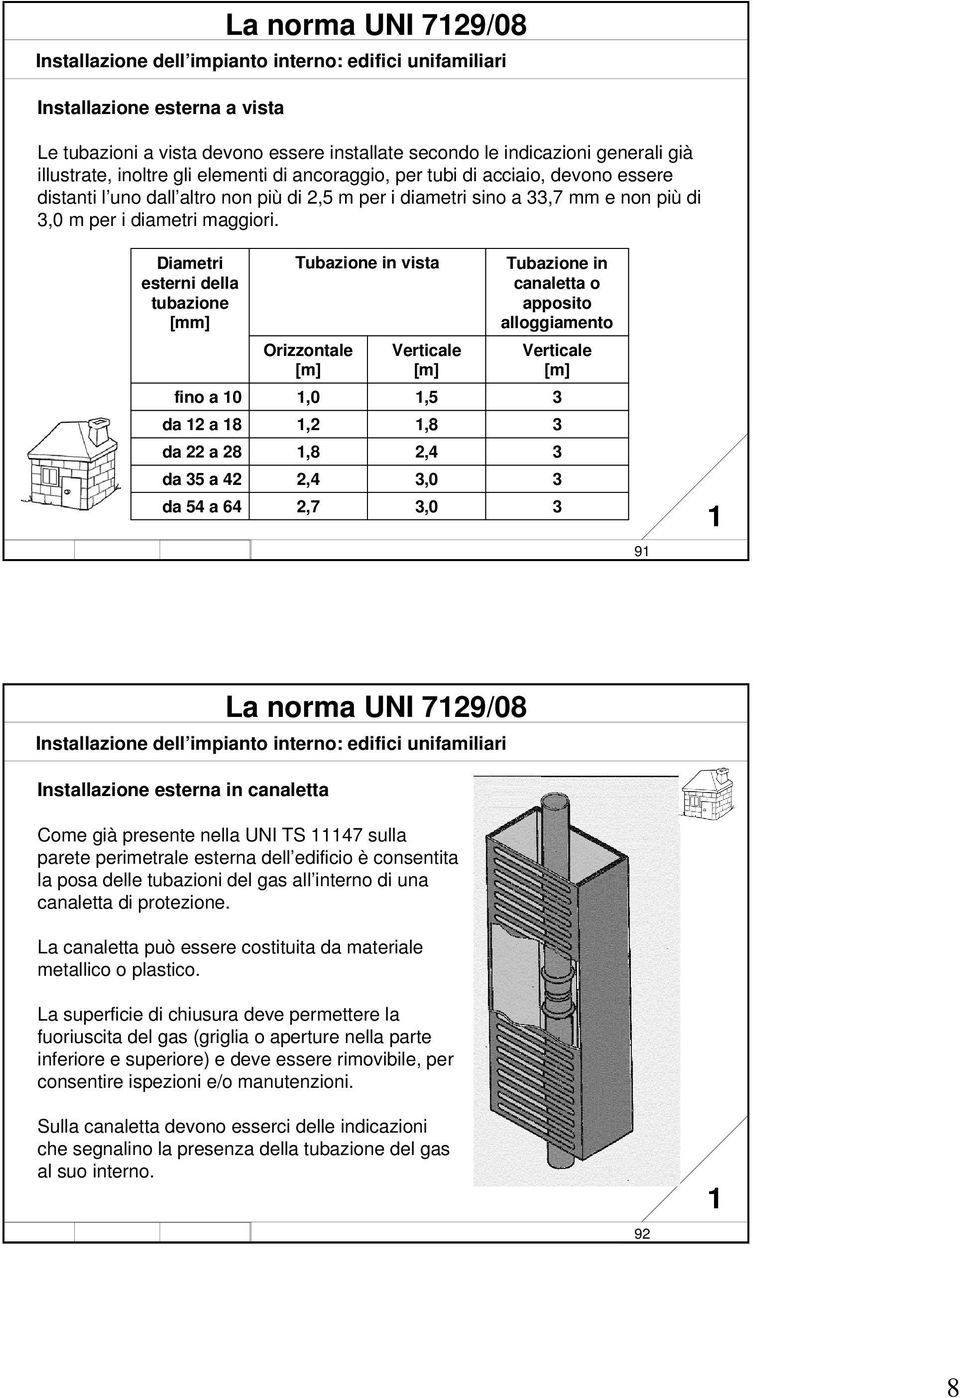 Diametri esterni della tubazione [mm] fino a 0 da 2 a 8 da 22 a 28 da 35 a 42 da 54 a 64 Tubazione in vista Orizzontale [m],0,2,8 2,4 2,7 Verticale [m] www. impiantitalia.